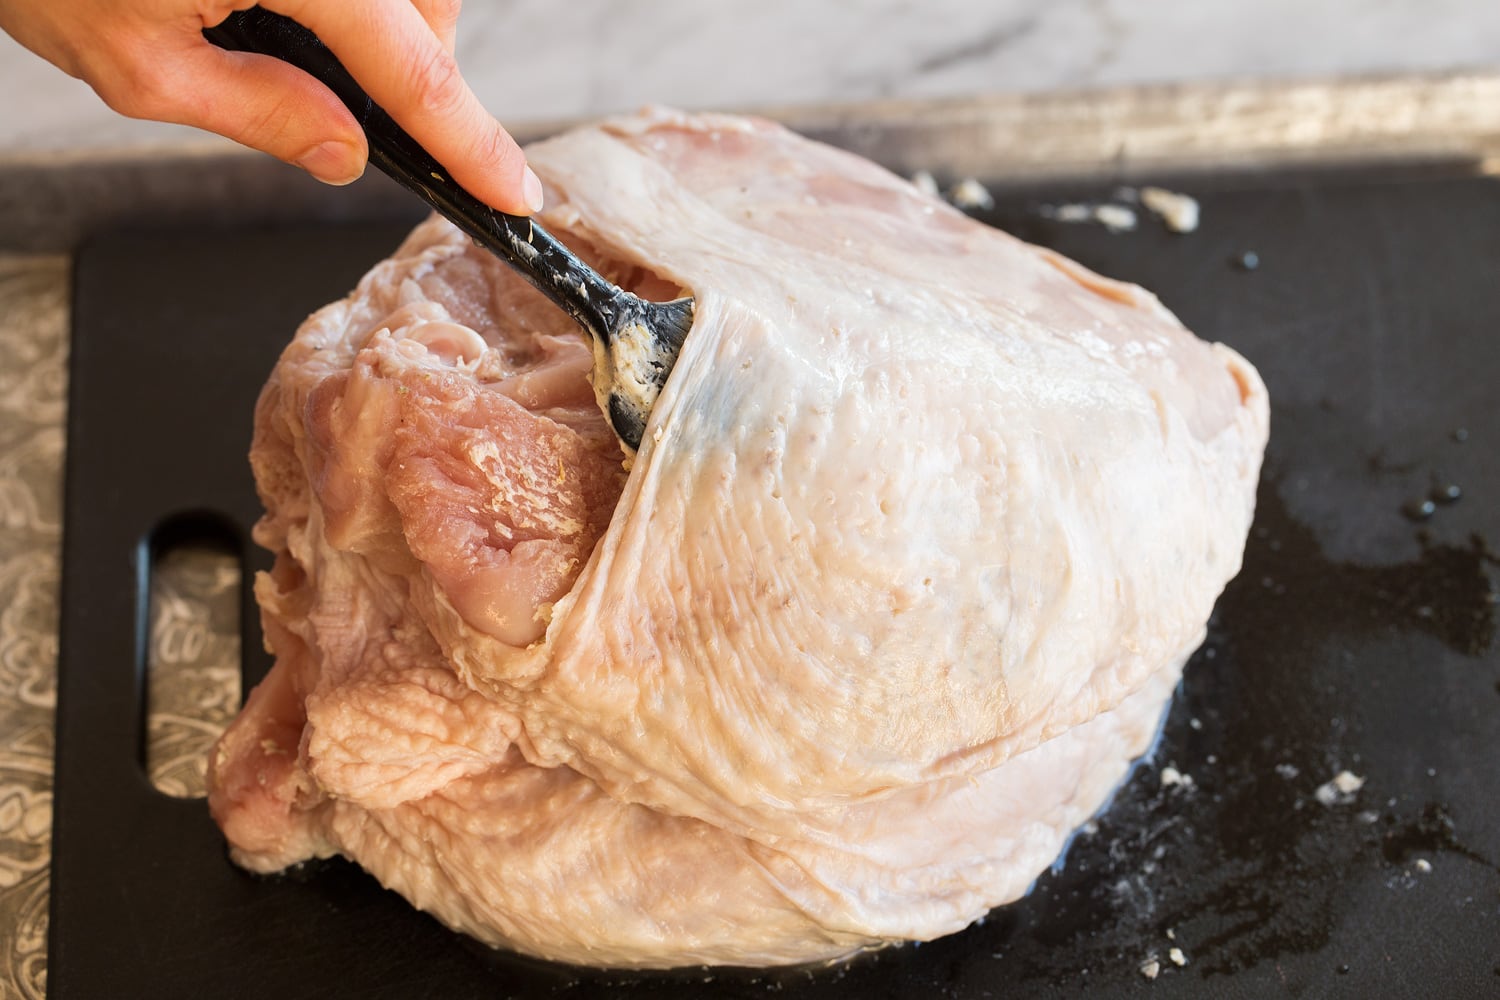 Adding butter herb mixture to a raw turkey breast under skin.